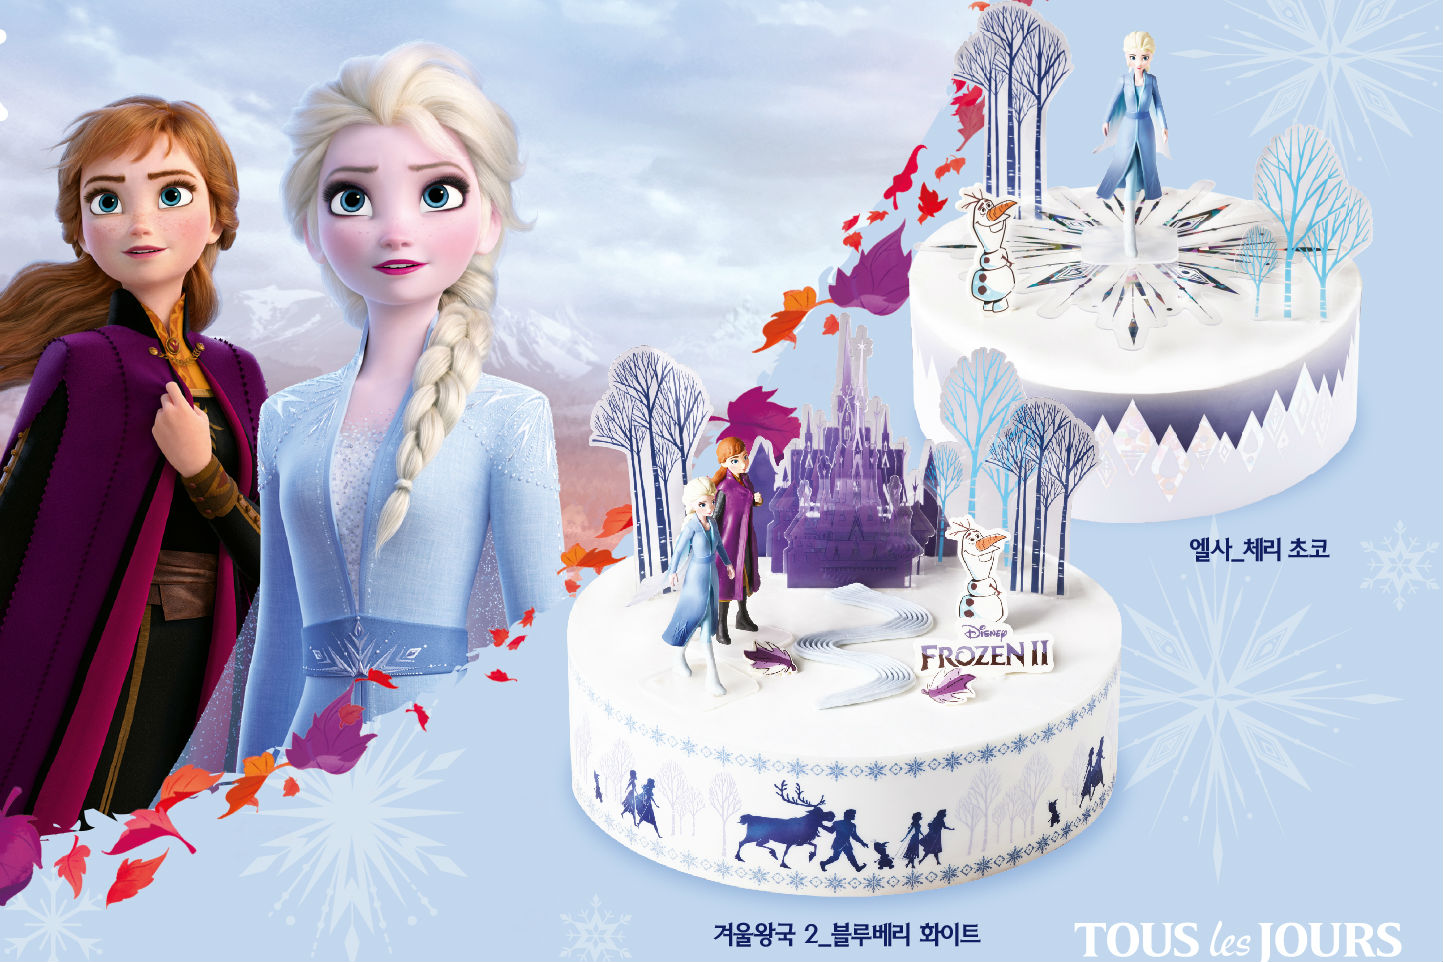 CJ푸드빌 뚜레쥬르 ‘겨울왕국2’ 케이크 출시 1주일 만에 2만 개 팔려